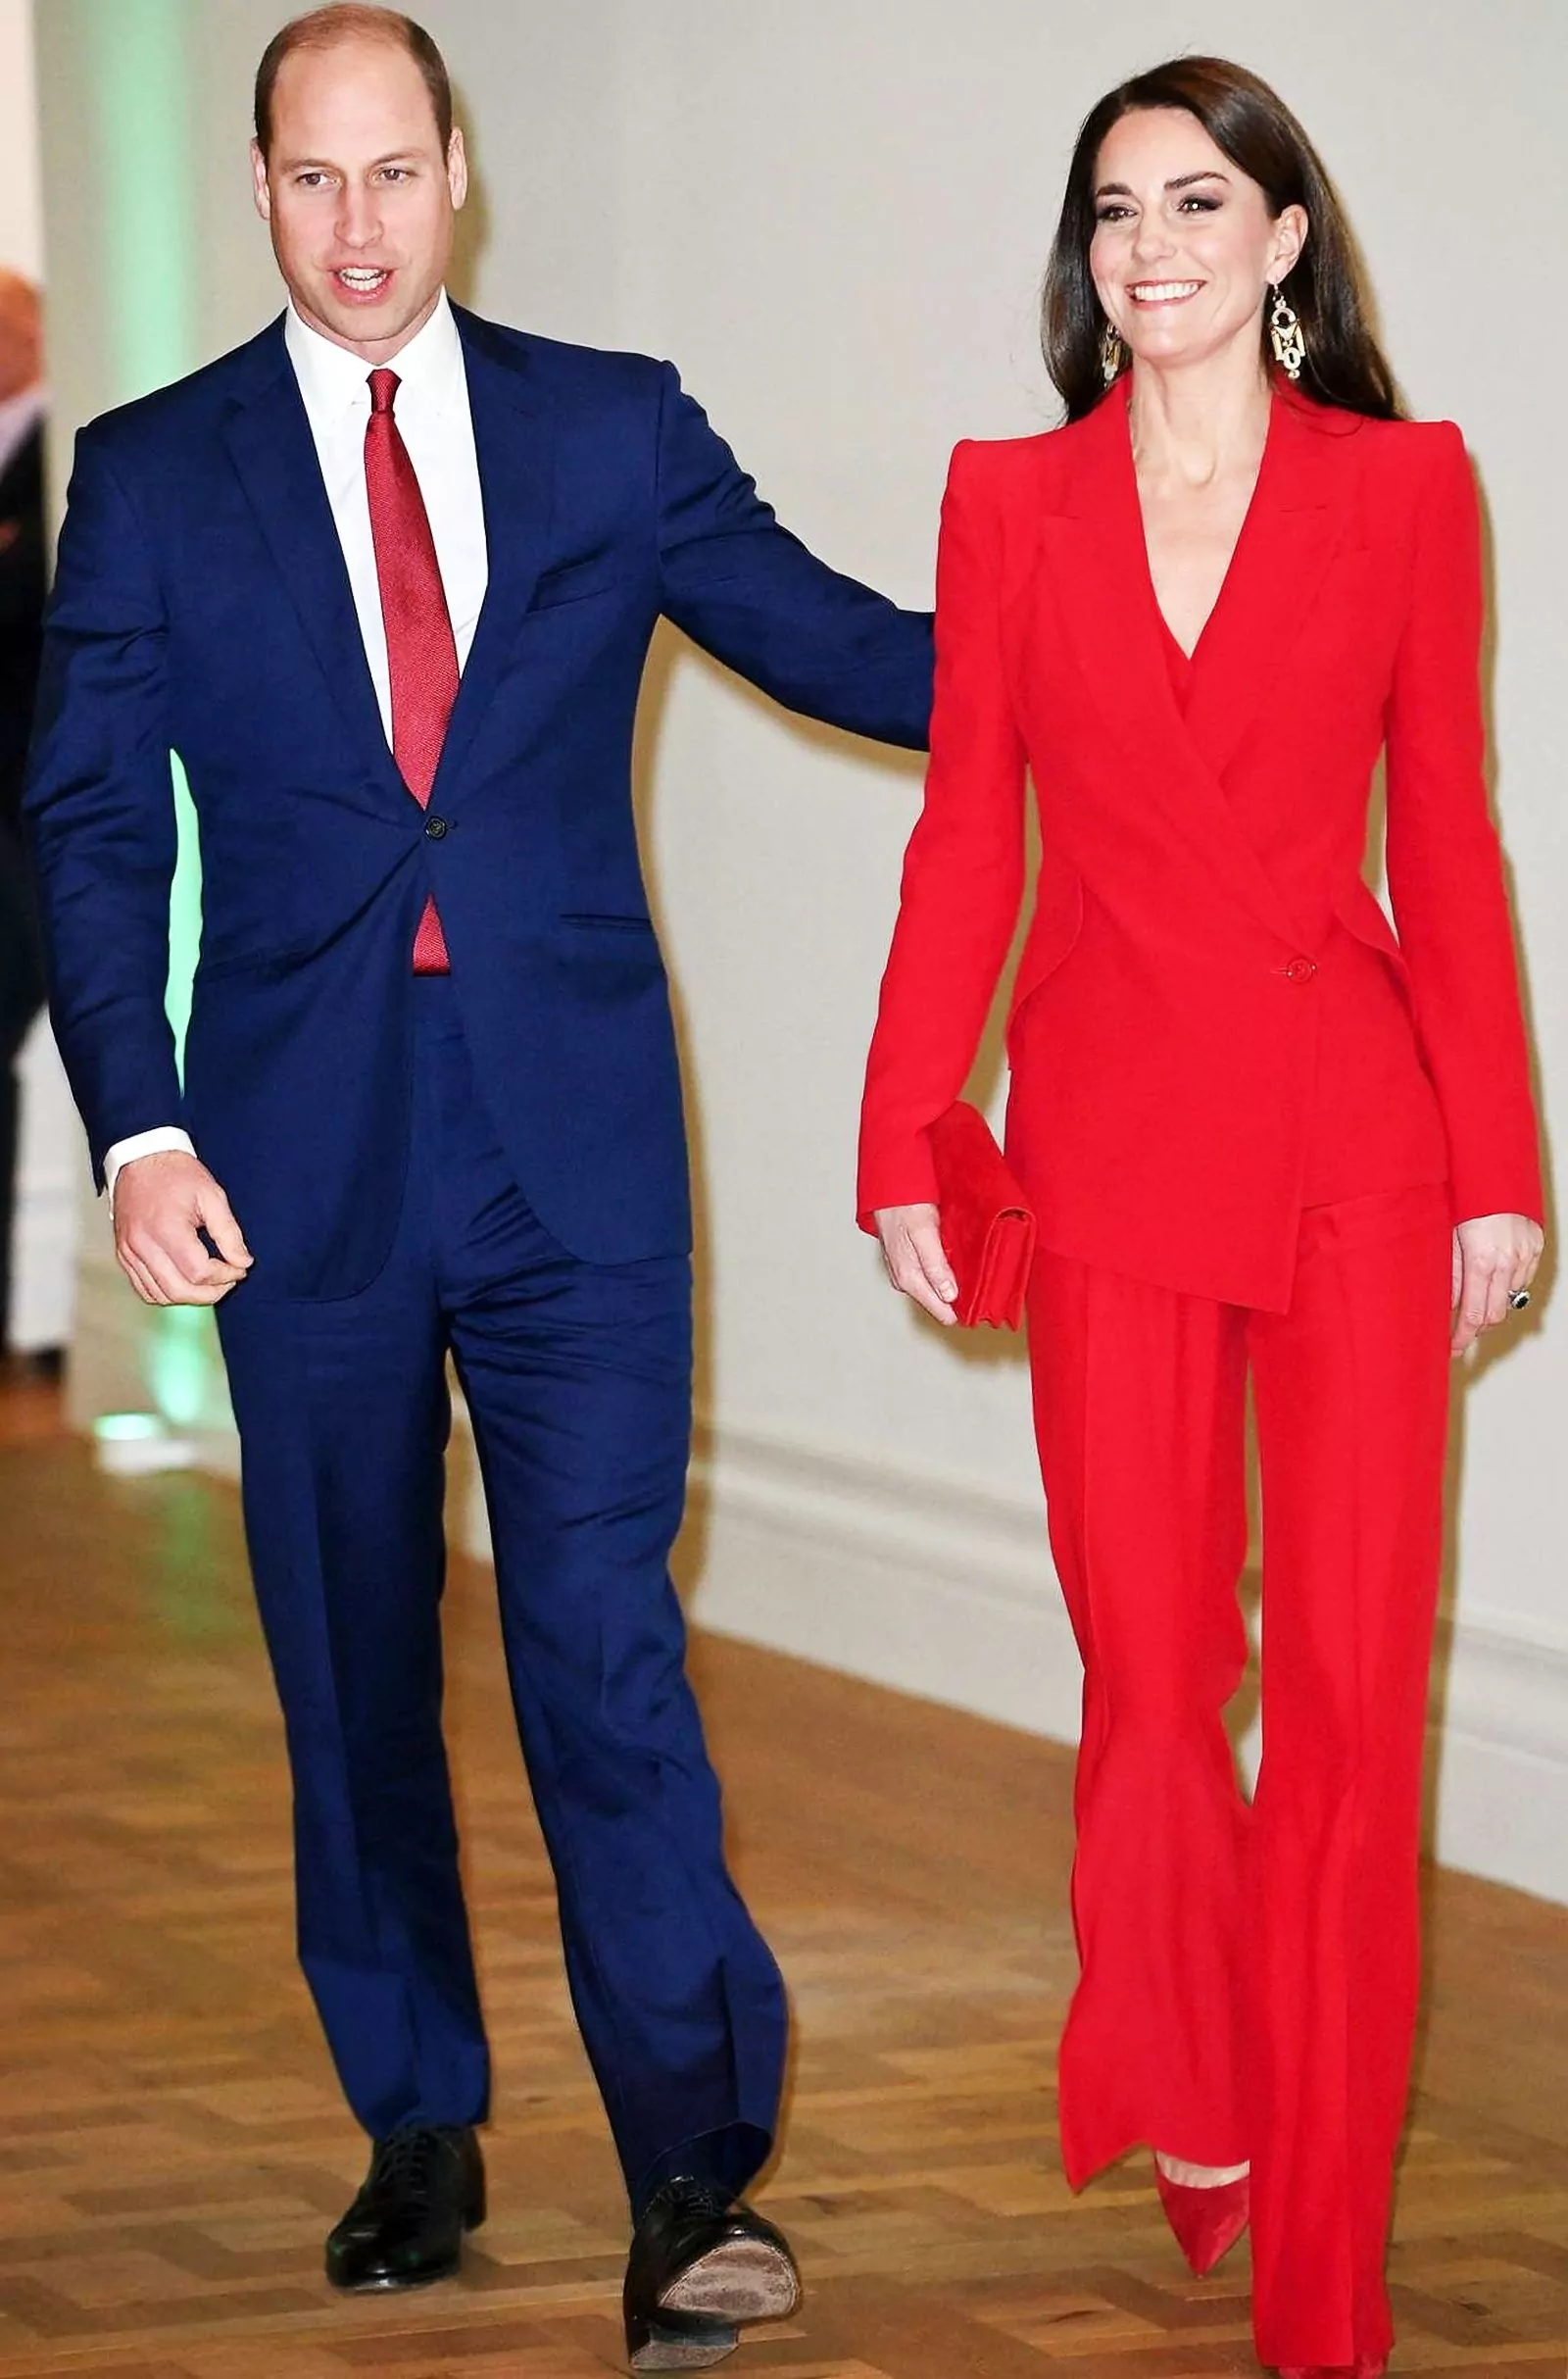 Уильям, принц Уэльский и Кэтрин, принцесса Уэльская на мероприятии, организованном The Royal Foundation Centre for Early Childhood, в штаб-квартире BAFTA в Лондоне, 30 января 2023 г.